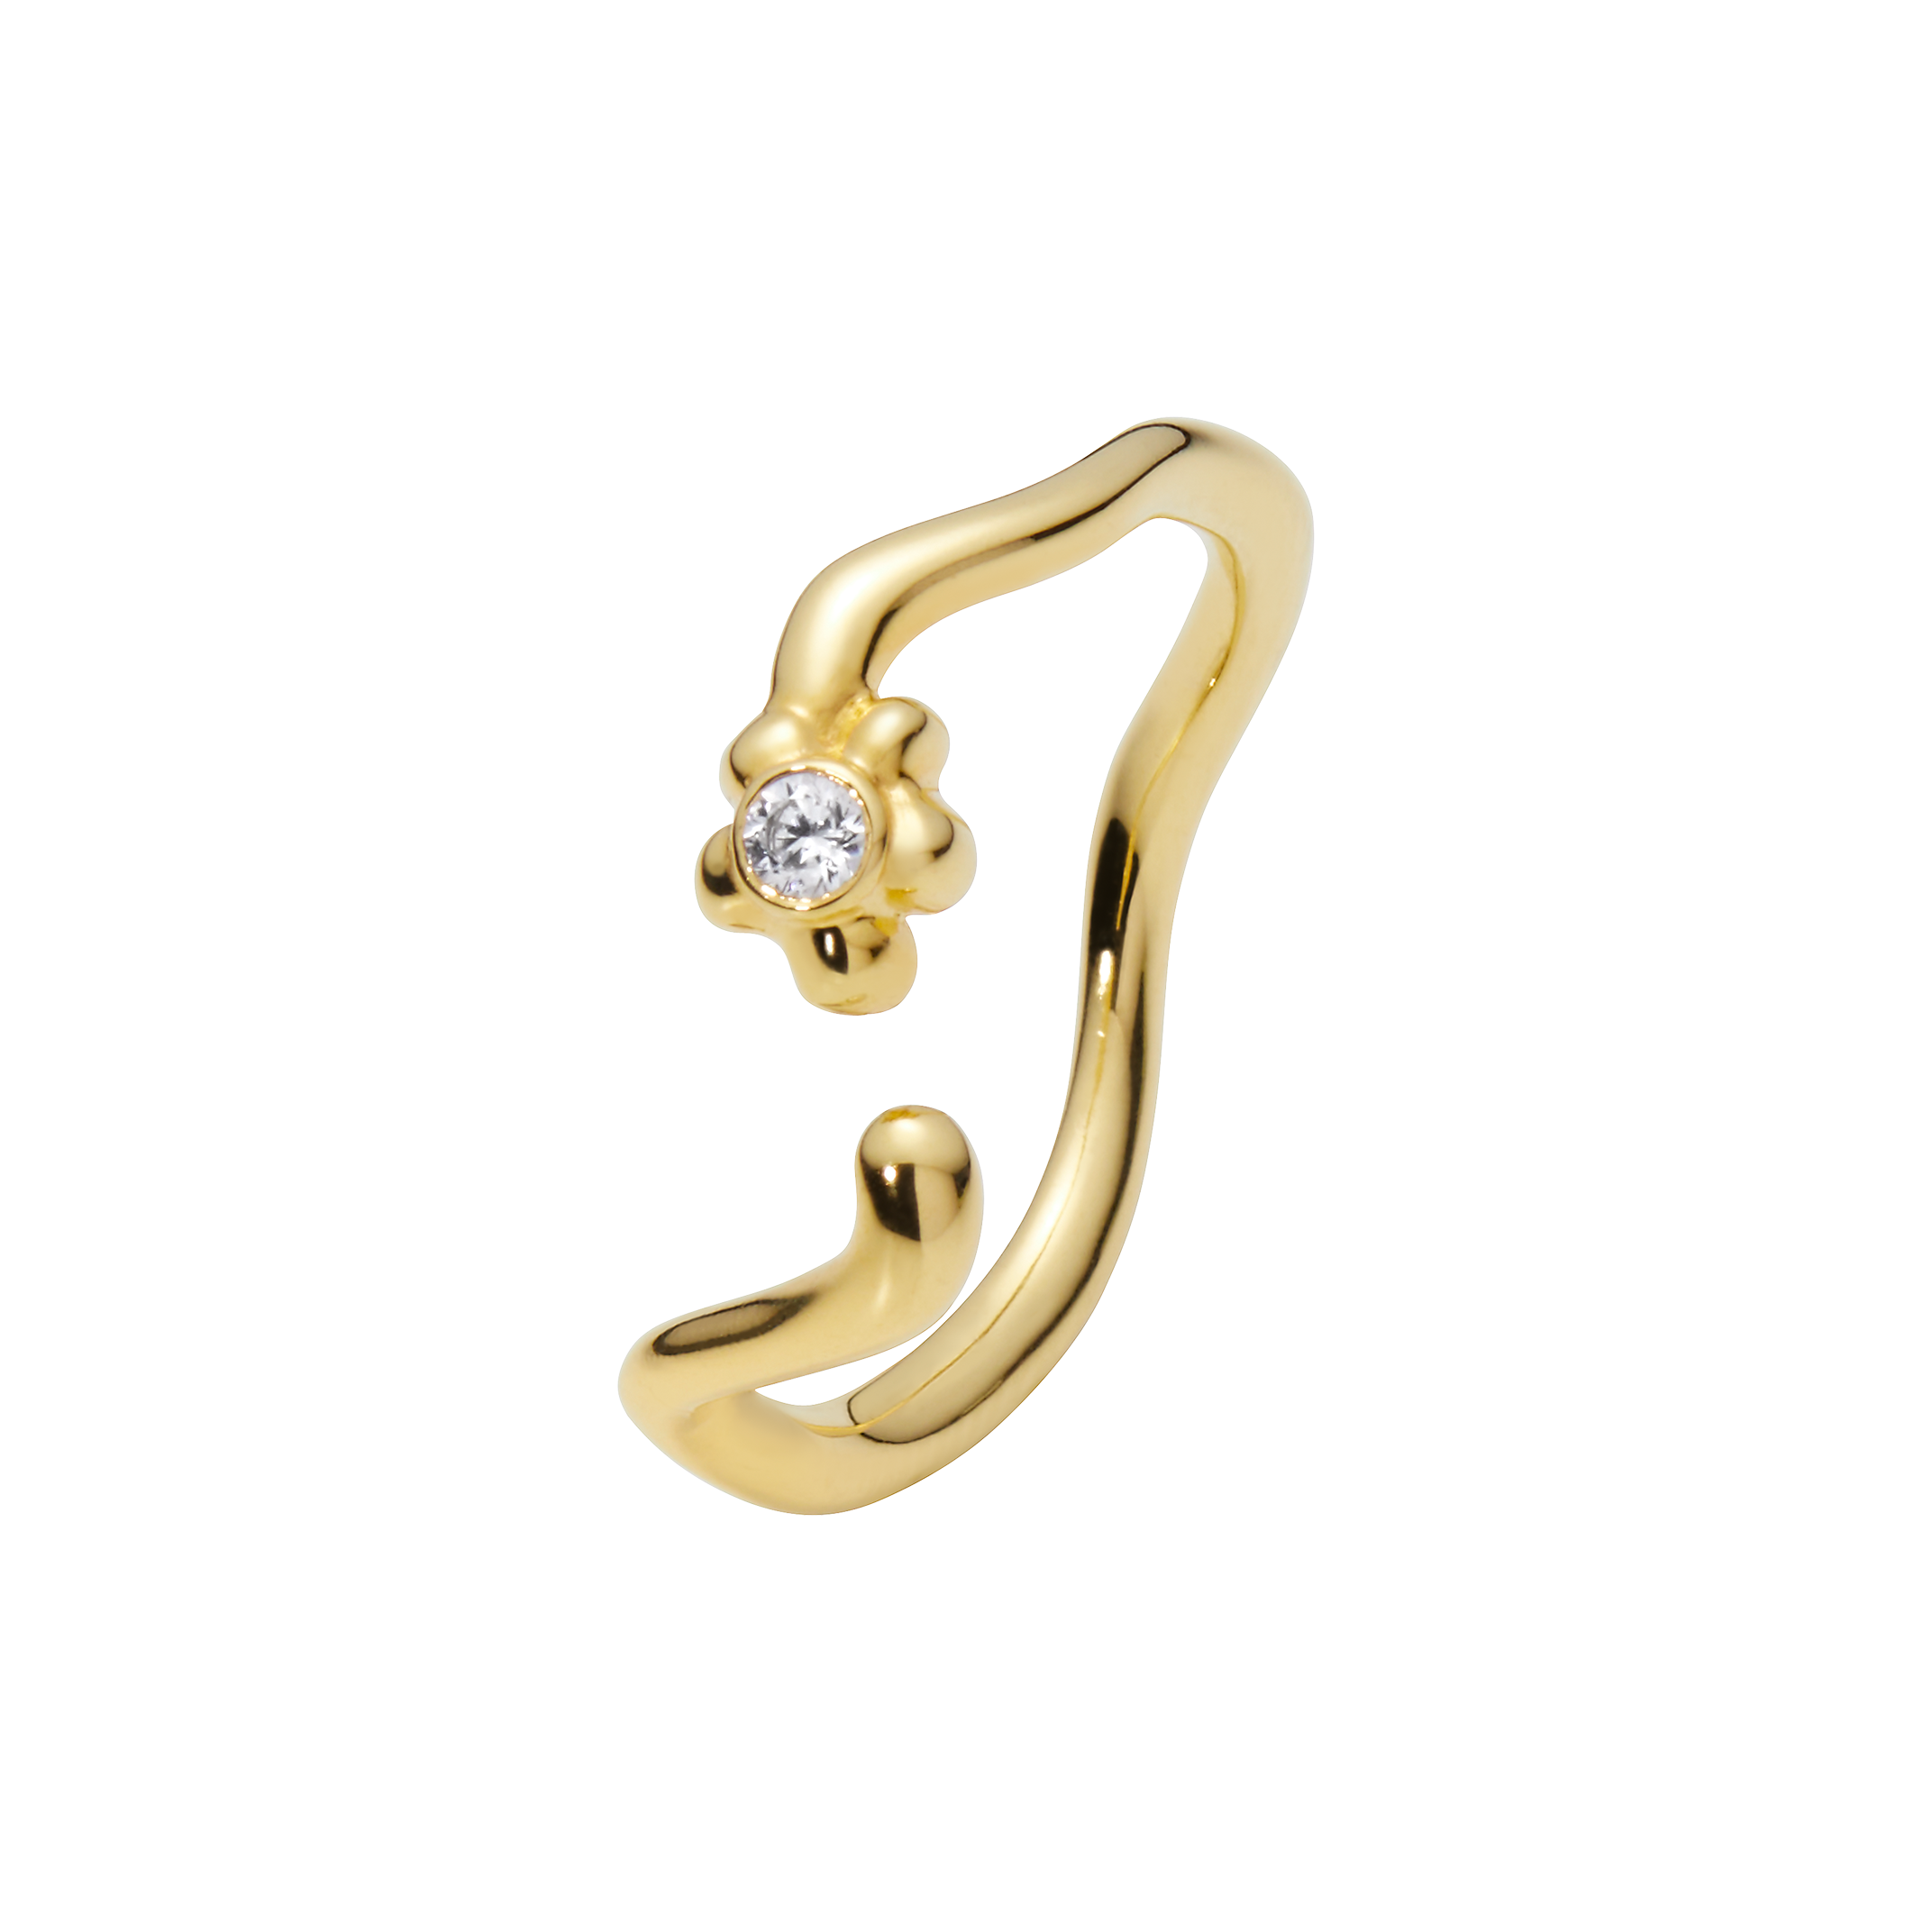 Enamel Letter Ring in 14k Rose Gold with White Diamond For Sale at 1stDibs  | s letter ring design images, enamel letters, 's letter ring for gents